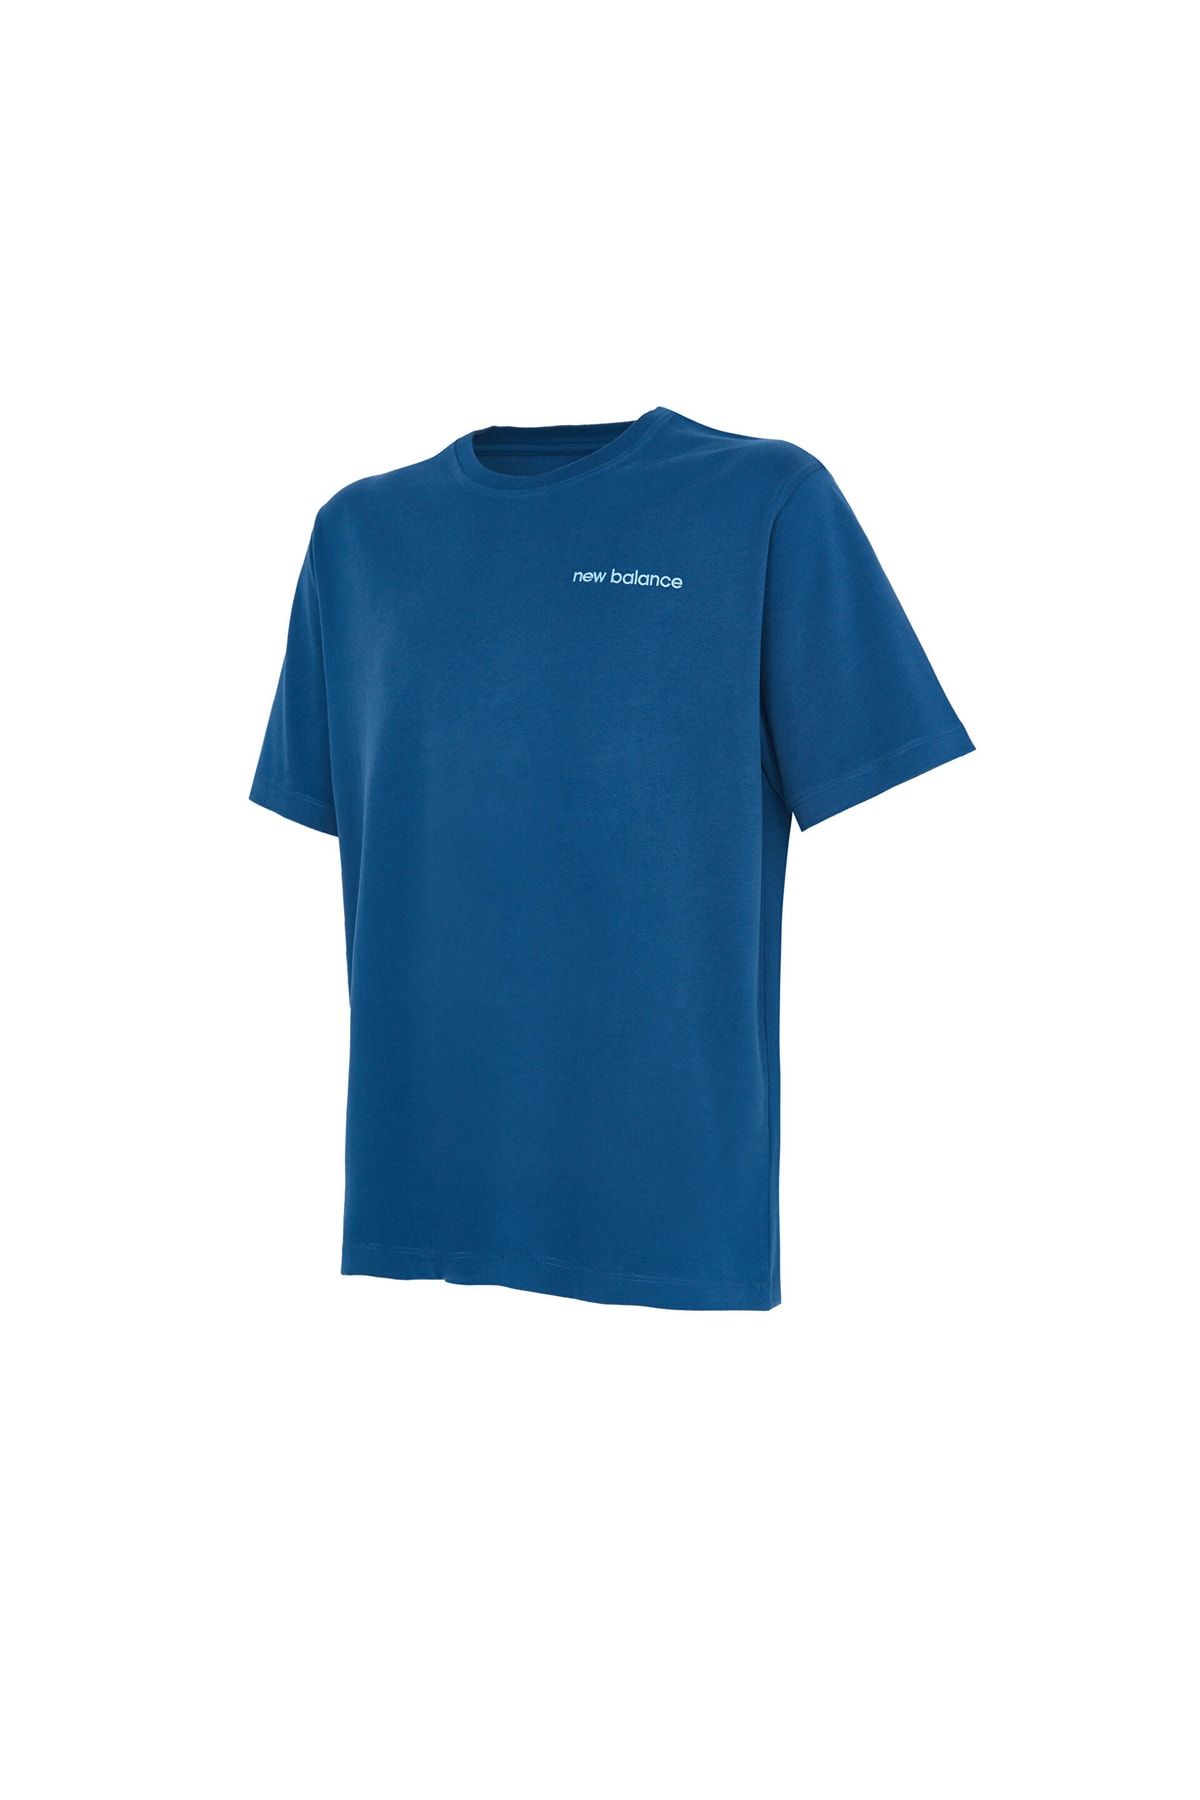 New Balance Nb Man Lifestyle T-shirt Erkek Mavi Tshirt Mnt1362-blu